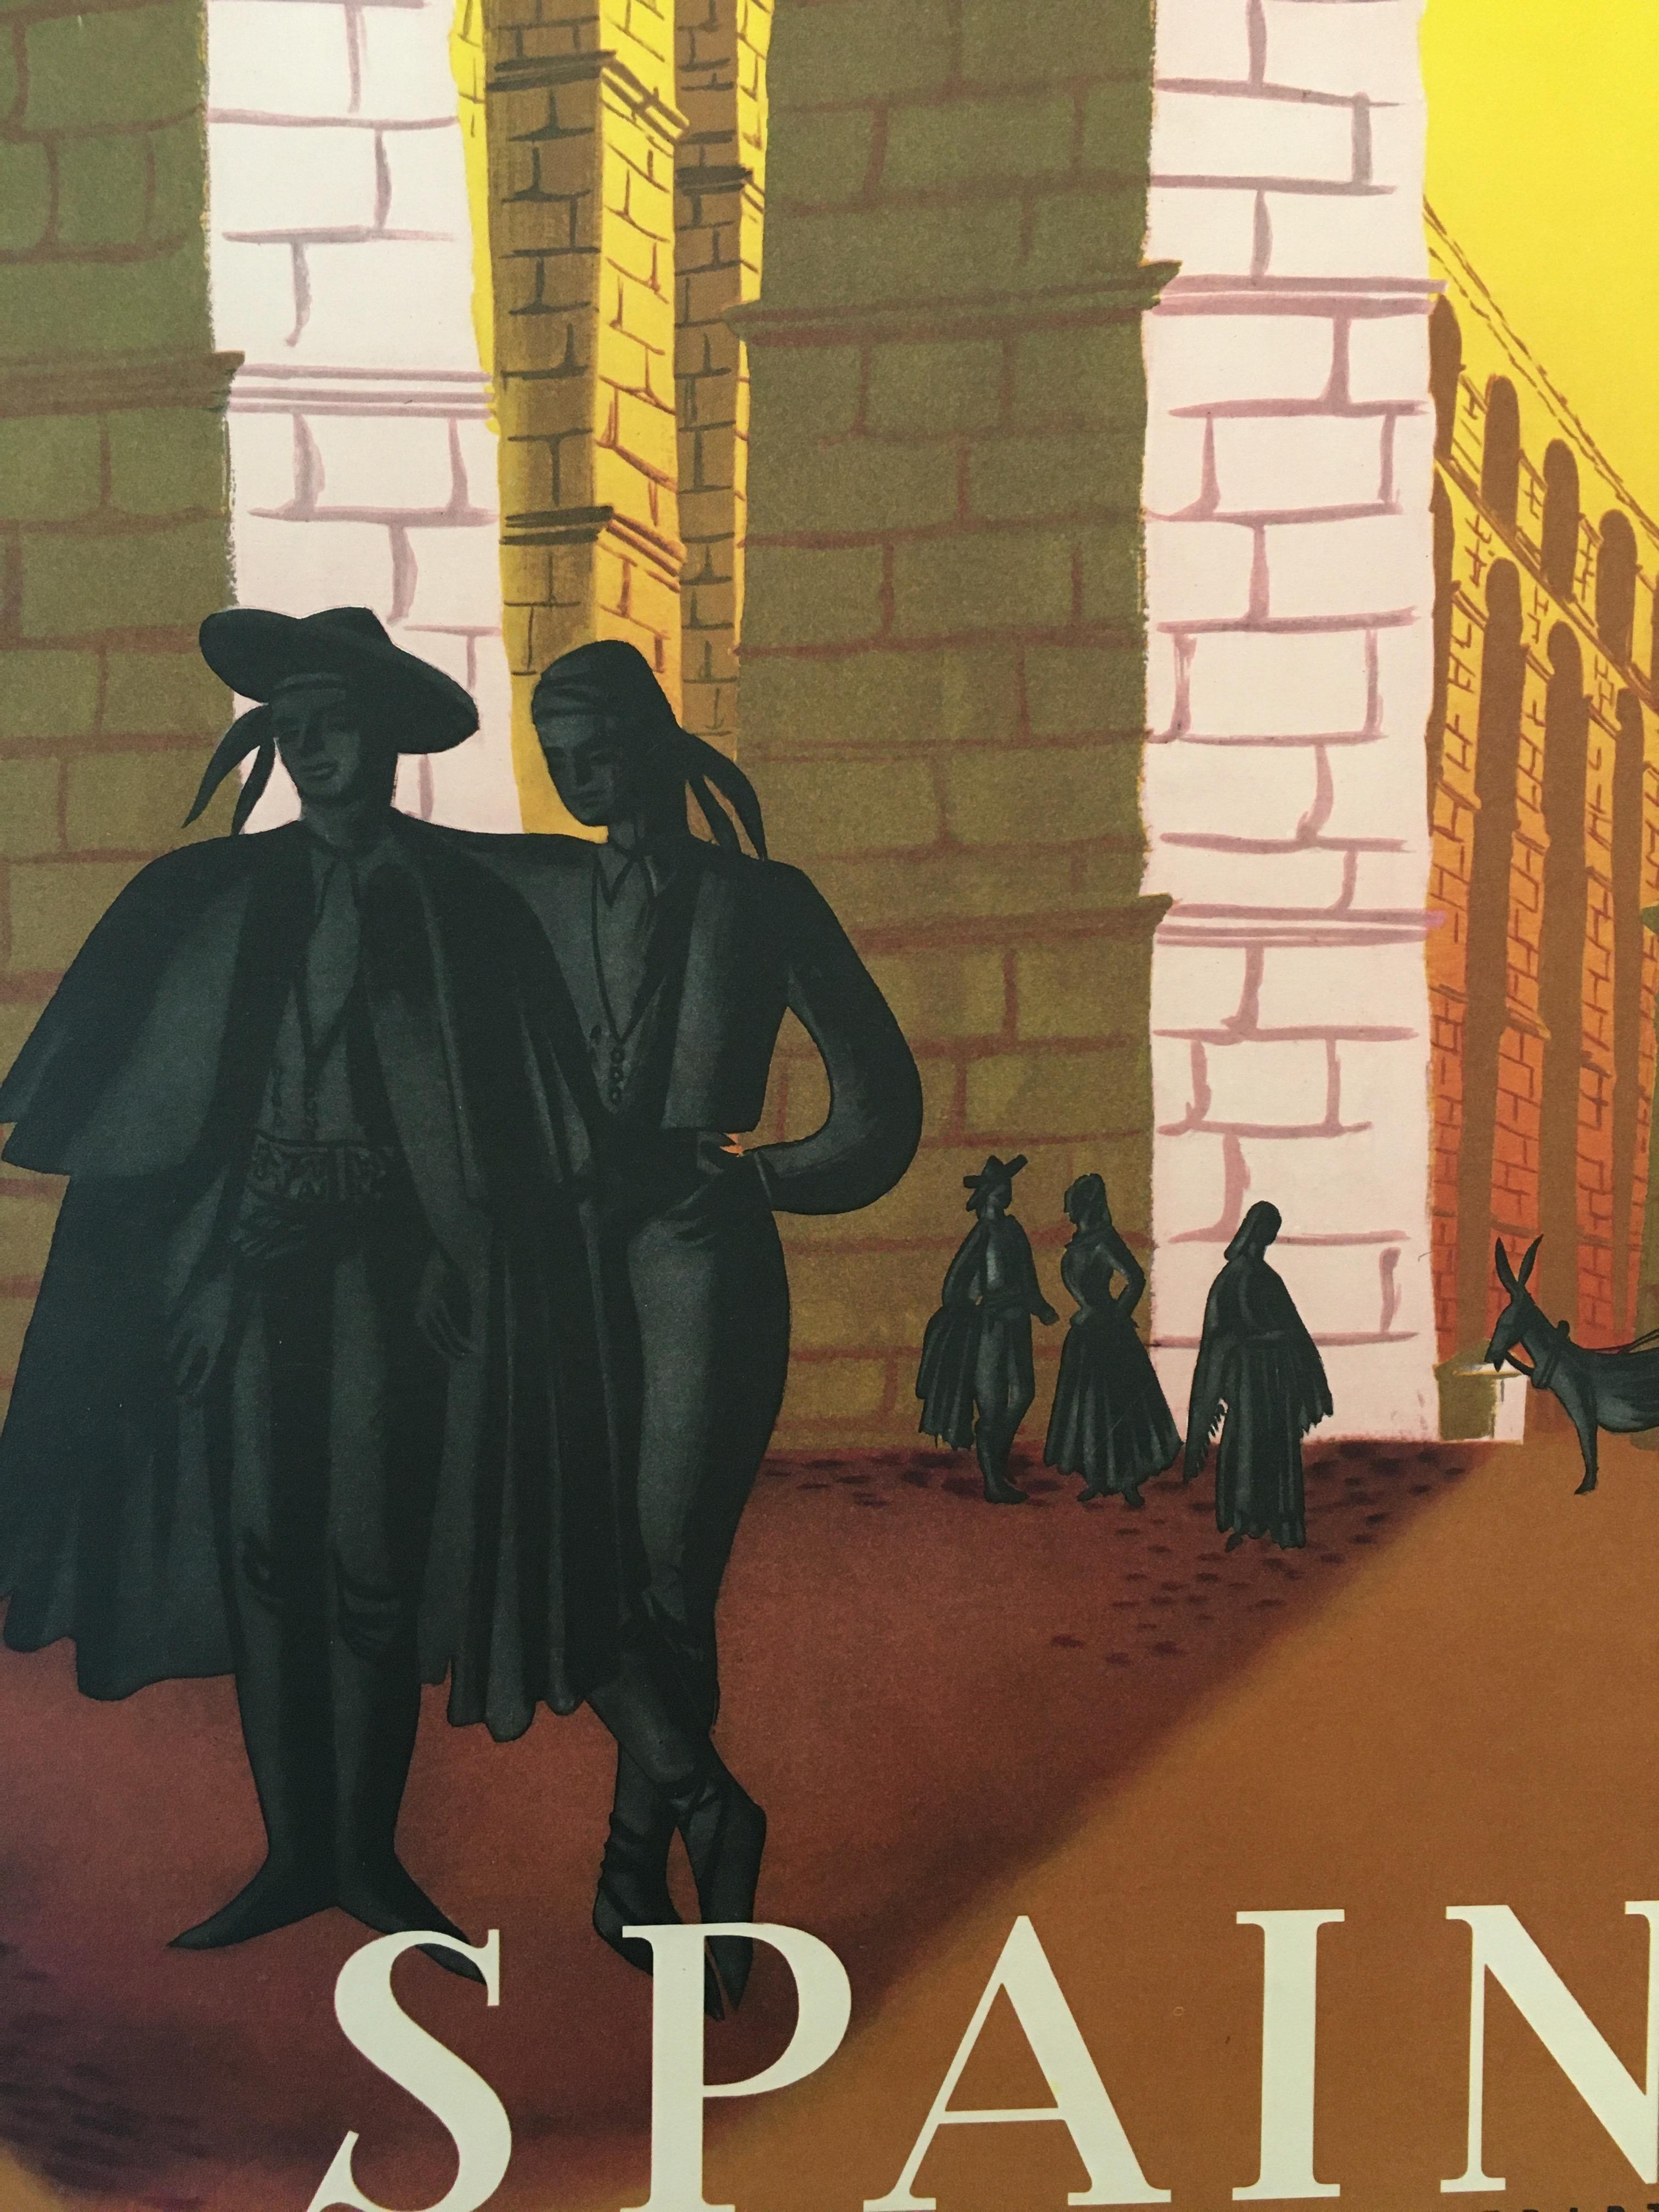 Affiche de voyage et de tourisme 'Espagne' par Delpy, 1948
 
Une représentation romantique et surréaliste de l'Espagne. Une affiche touristique vintage originale conçue par Tom Delpy. Les couleurs sont l'état de l'affiche est excellent. L'affiche